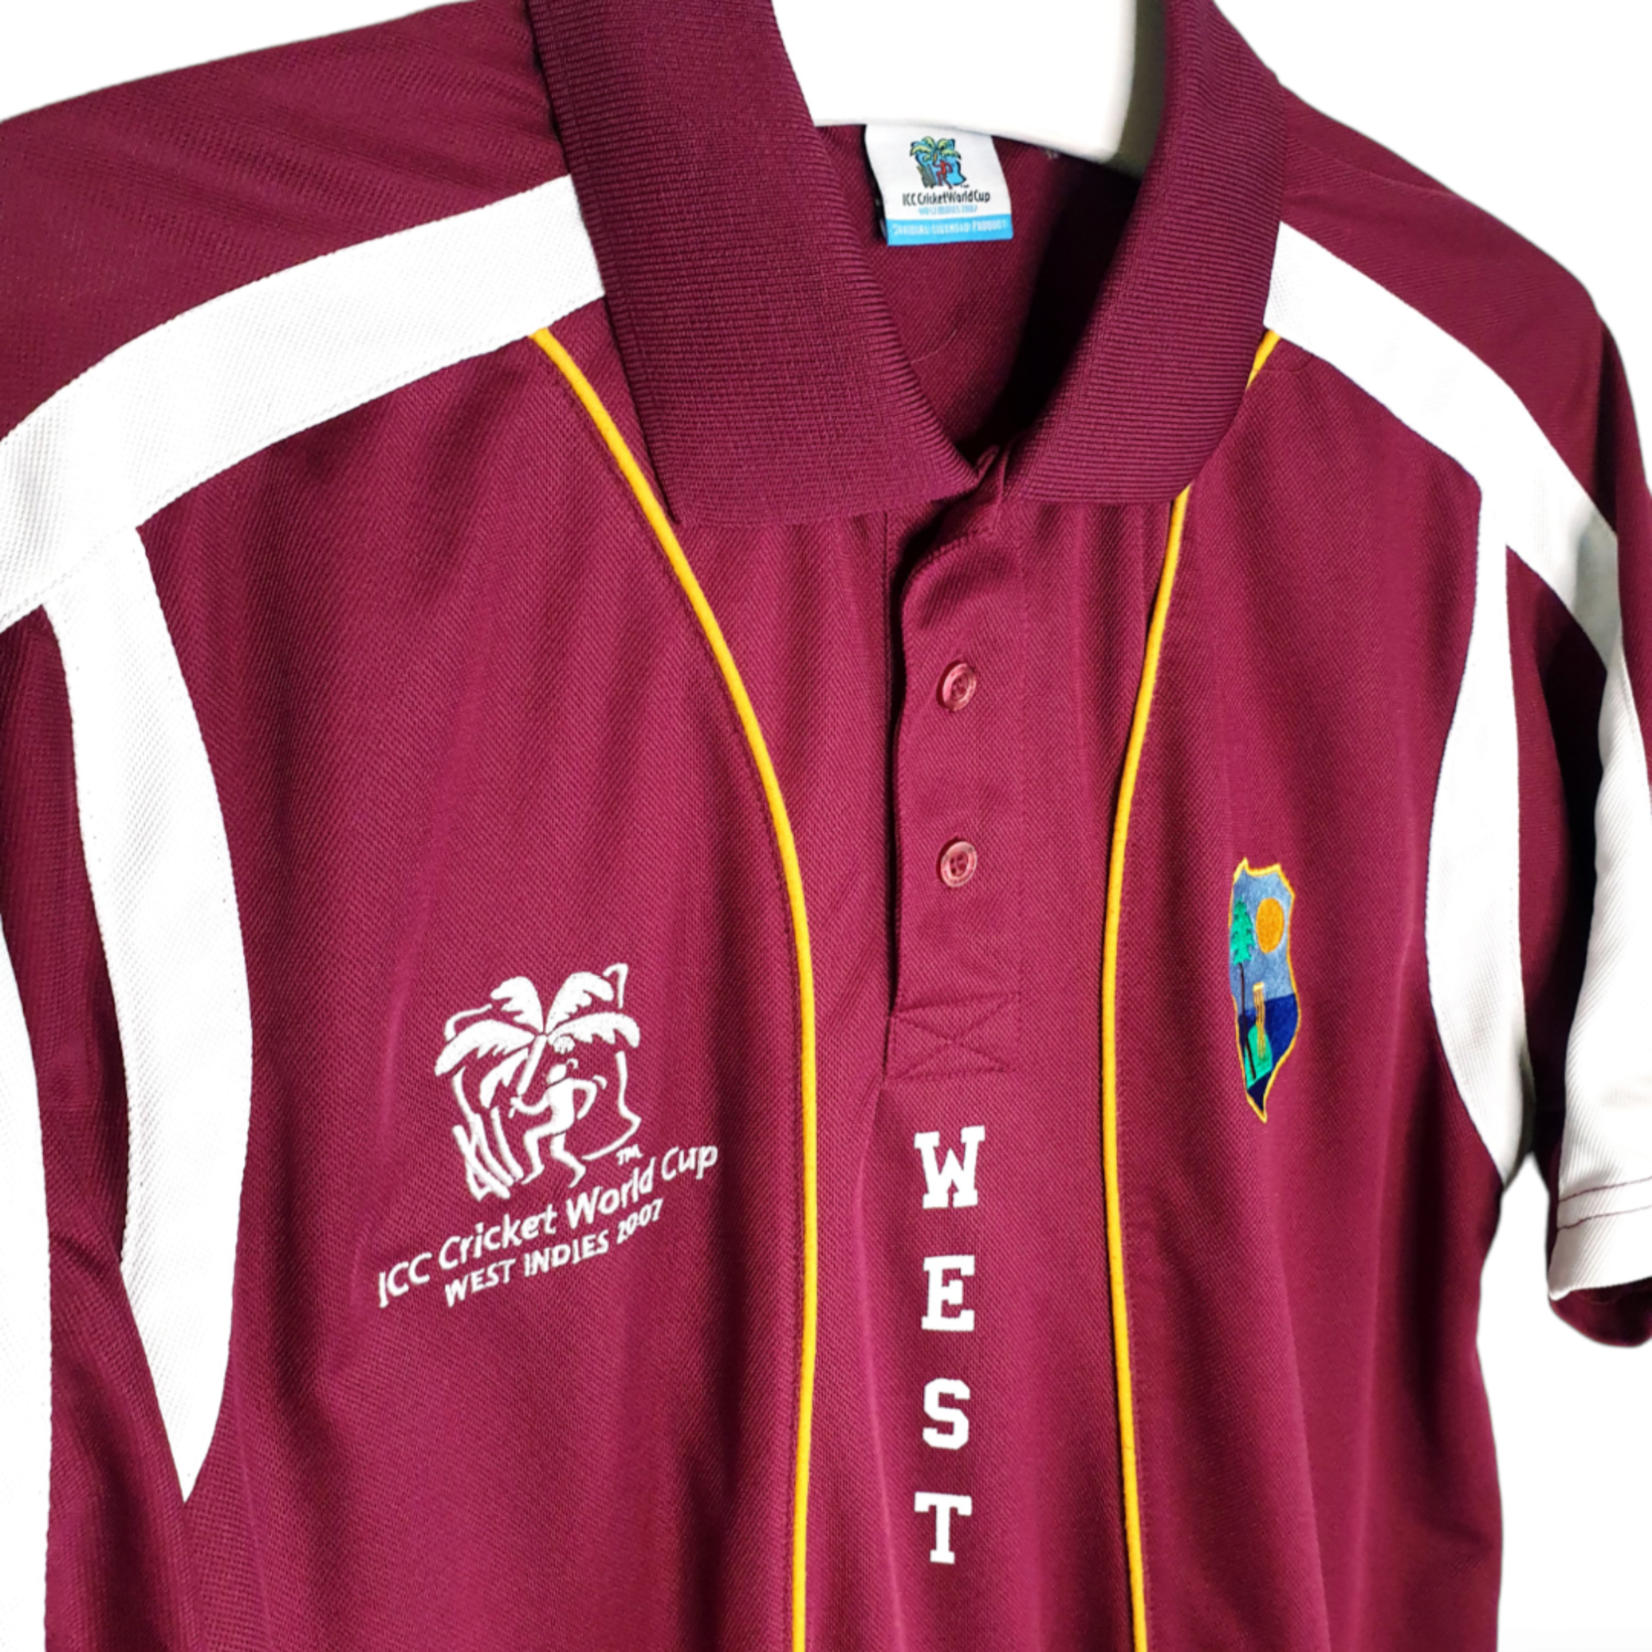 ICC Origineel ICC vintage cricket shirt West Indies 2007